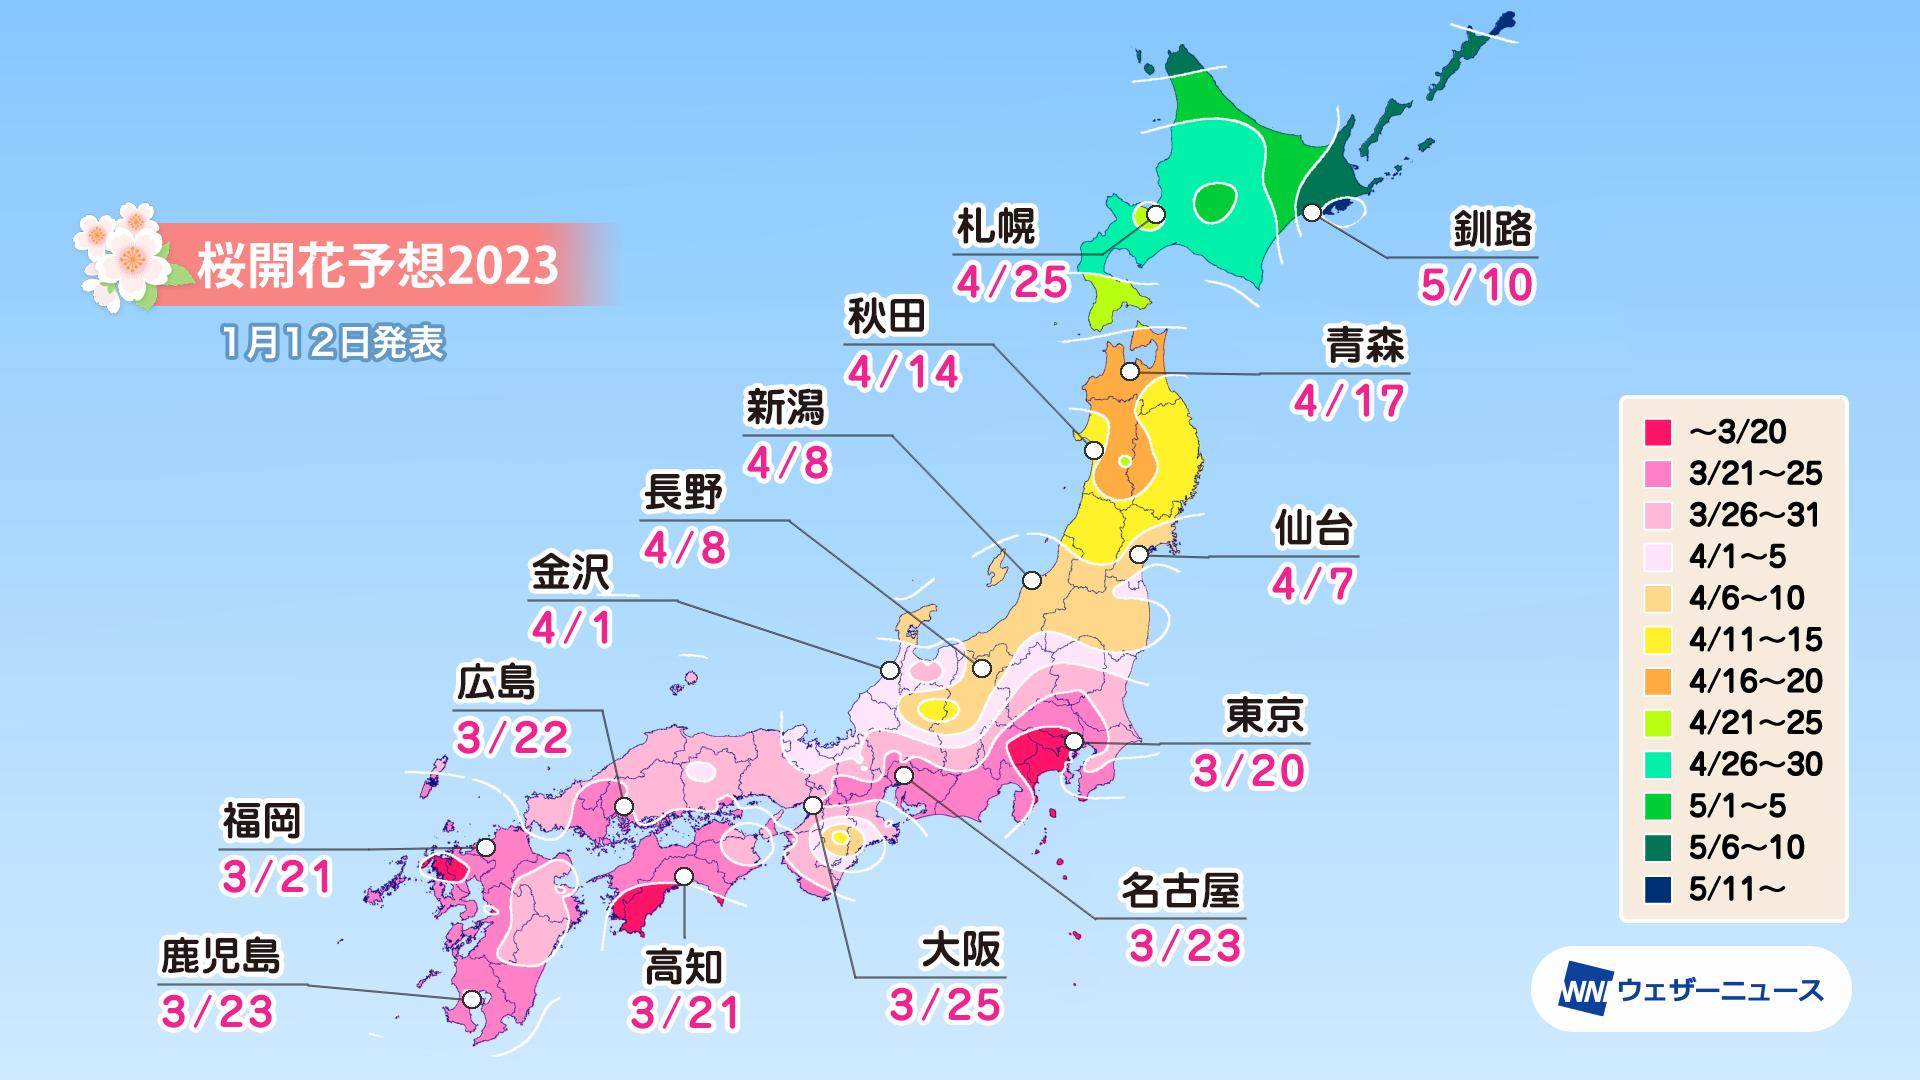 ウェザーニューズ、「第一回桜開花予想」発表　3月20日に東京から開花スタート、広範囲で平年並かやや早い予想